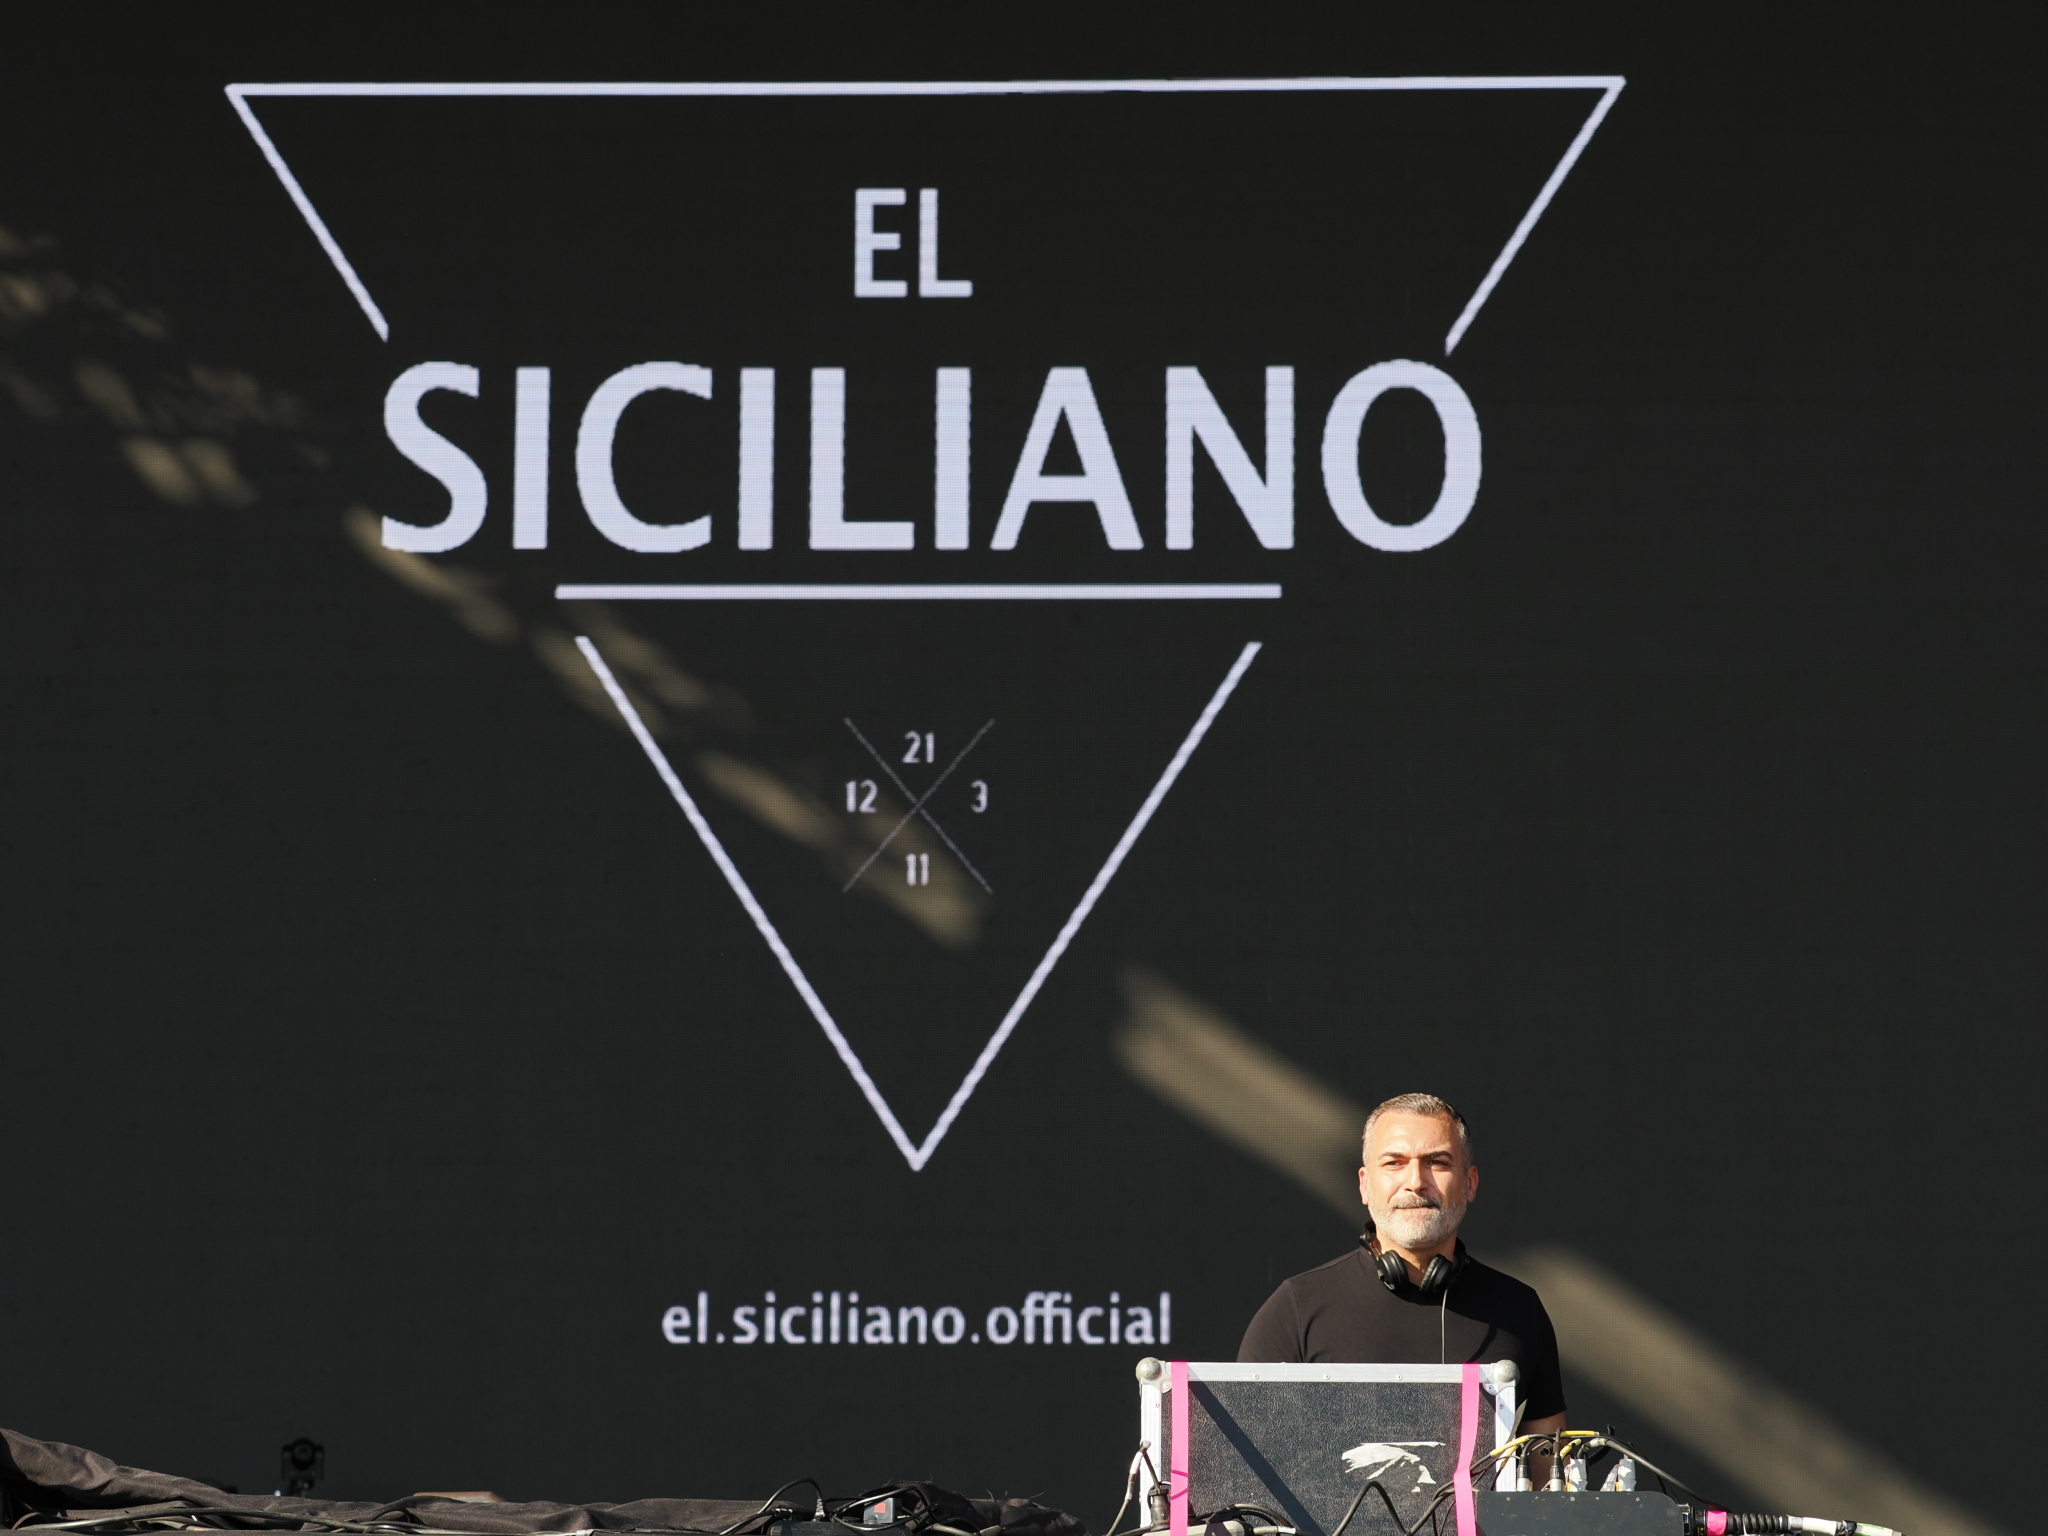 Ο El Siciliano στη σκηνή του Release Athens 2022